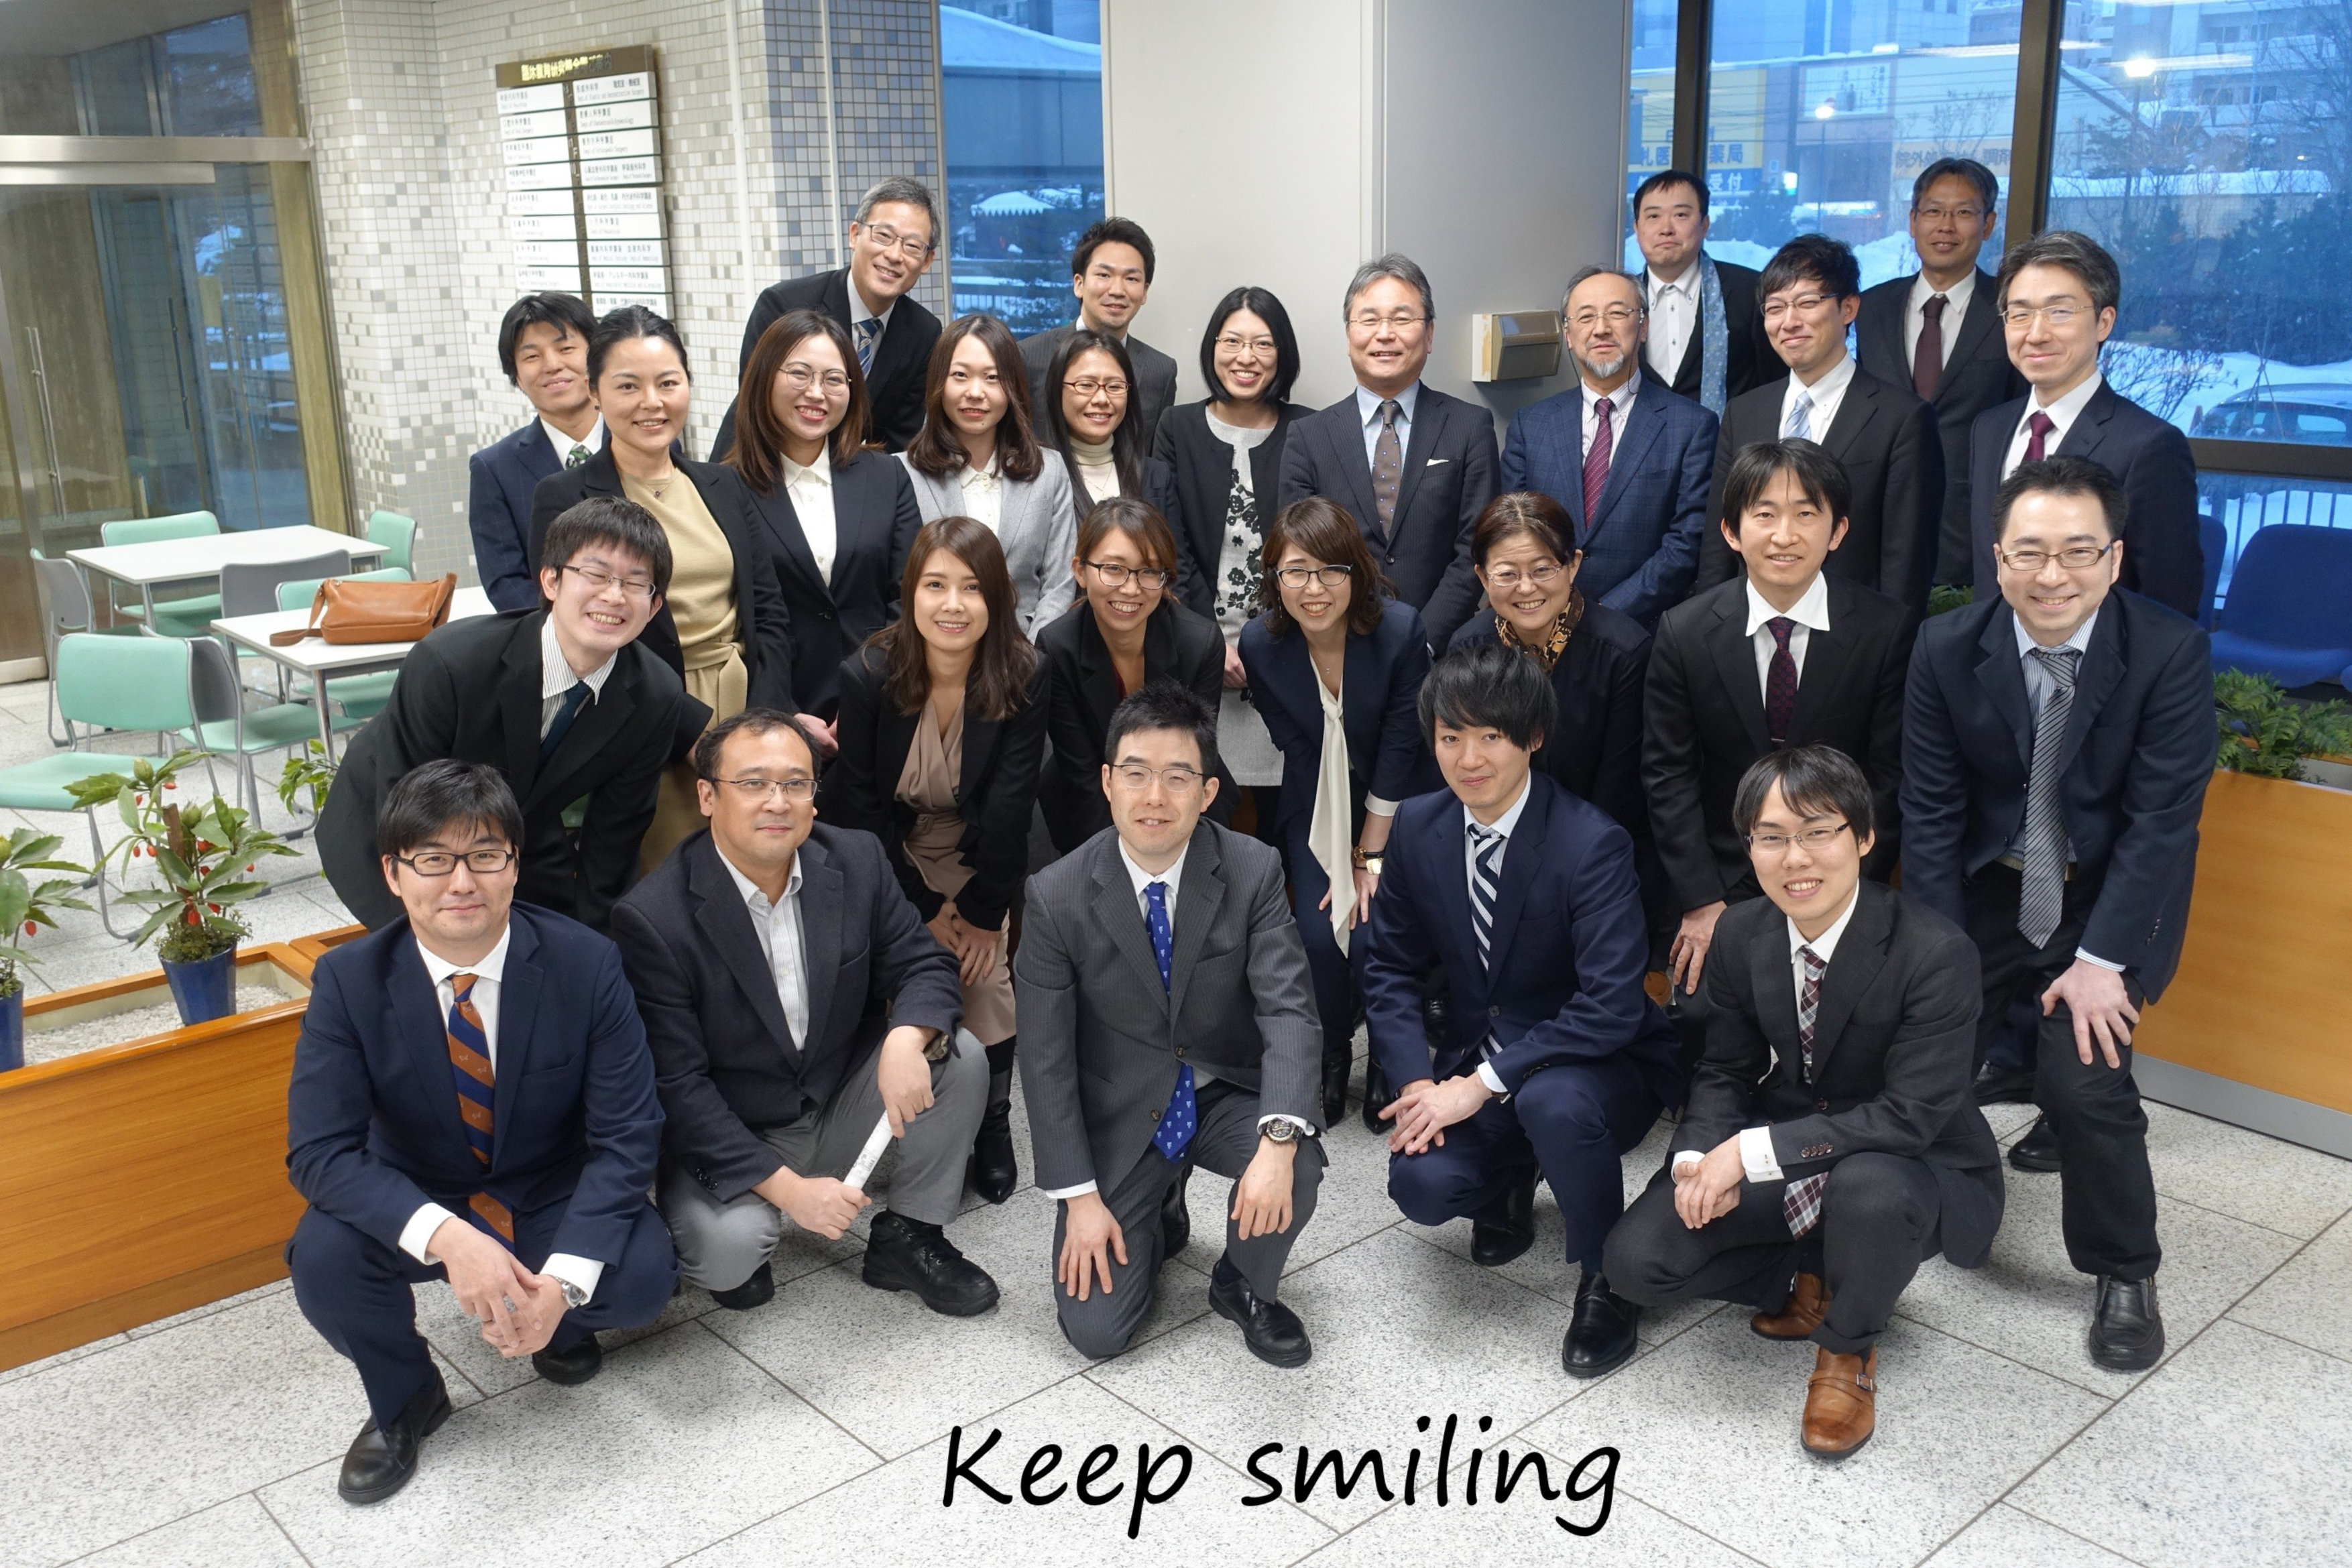 札幌医科大学医学部皮膚科学講座では、基礎的研究から臨床的研究まで幅広い研究を行っています。